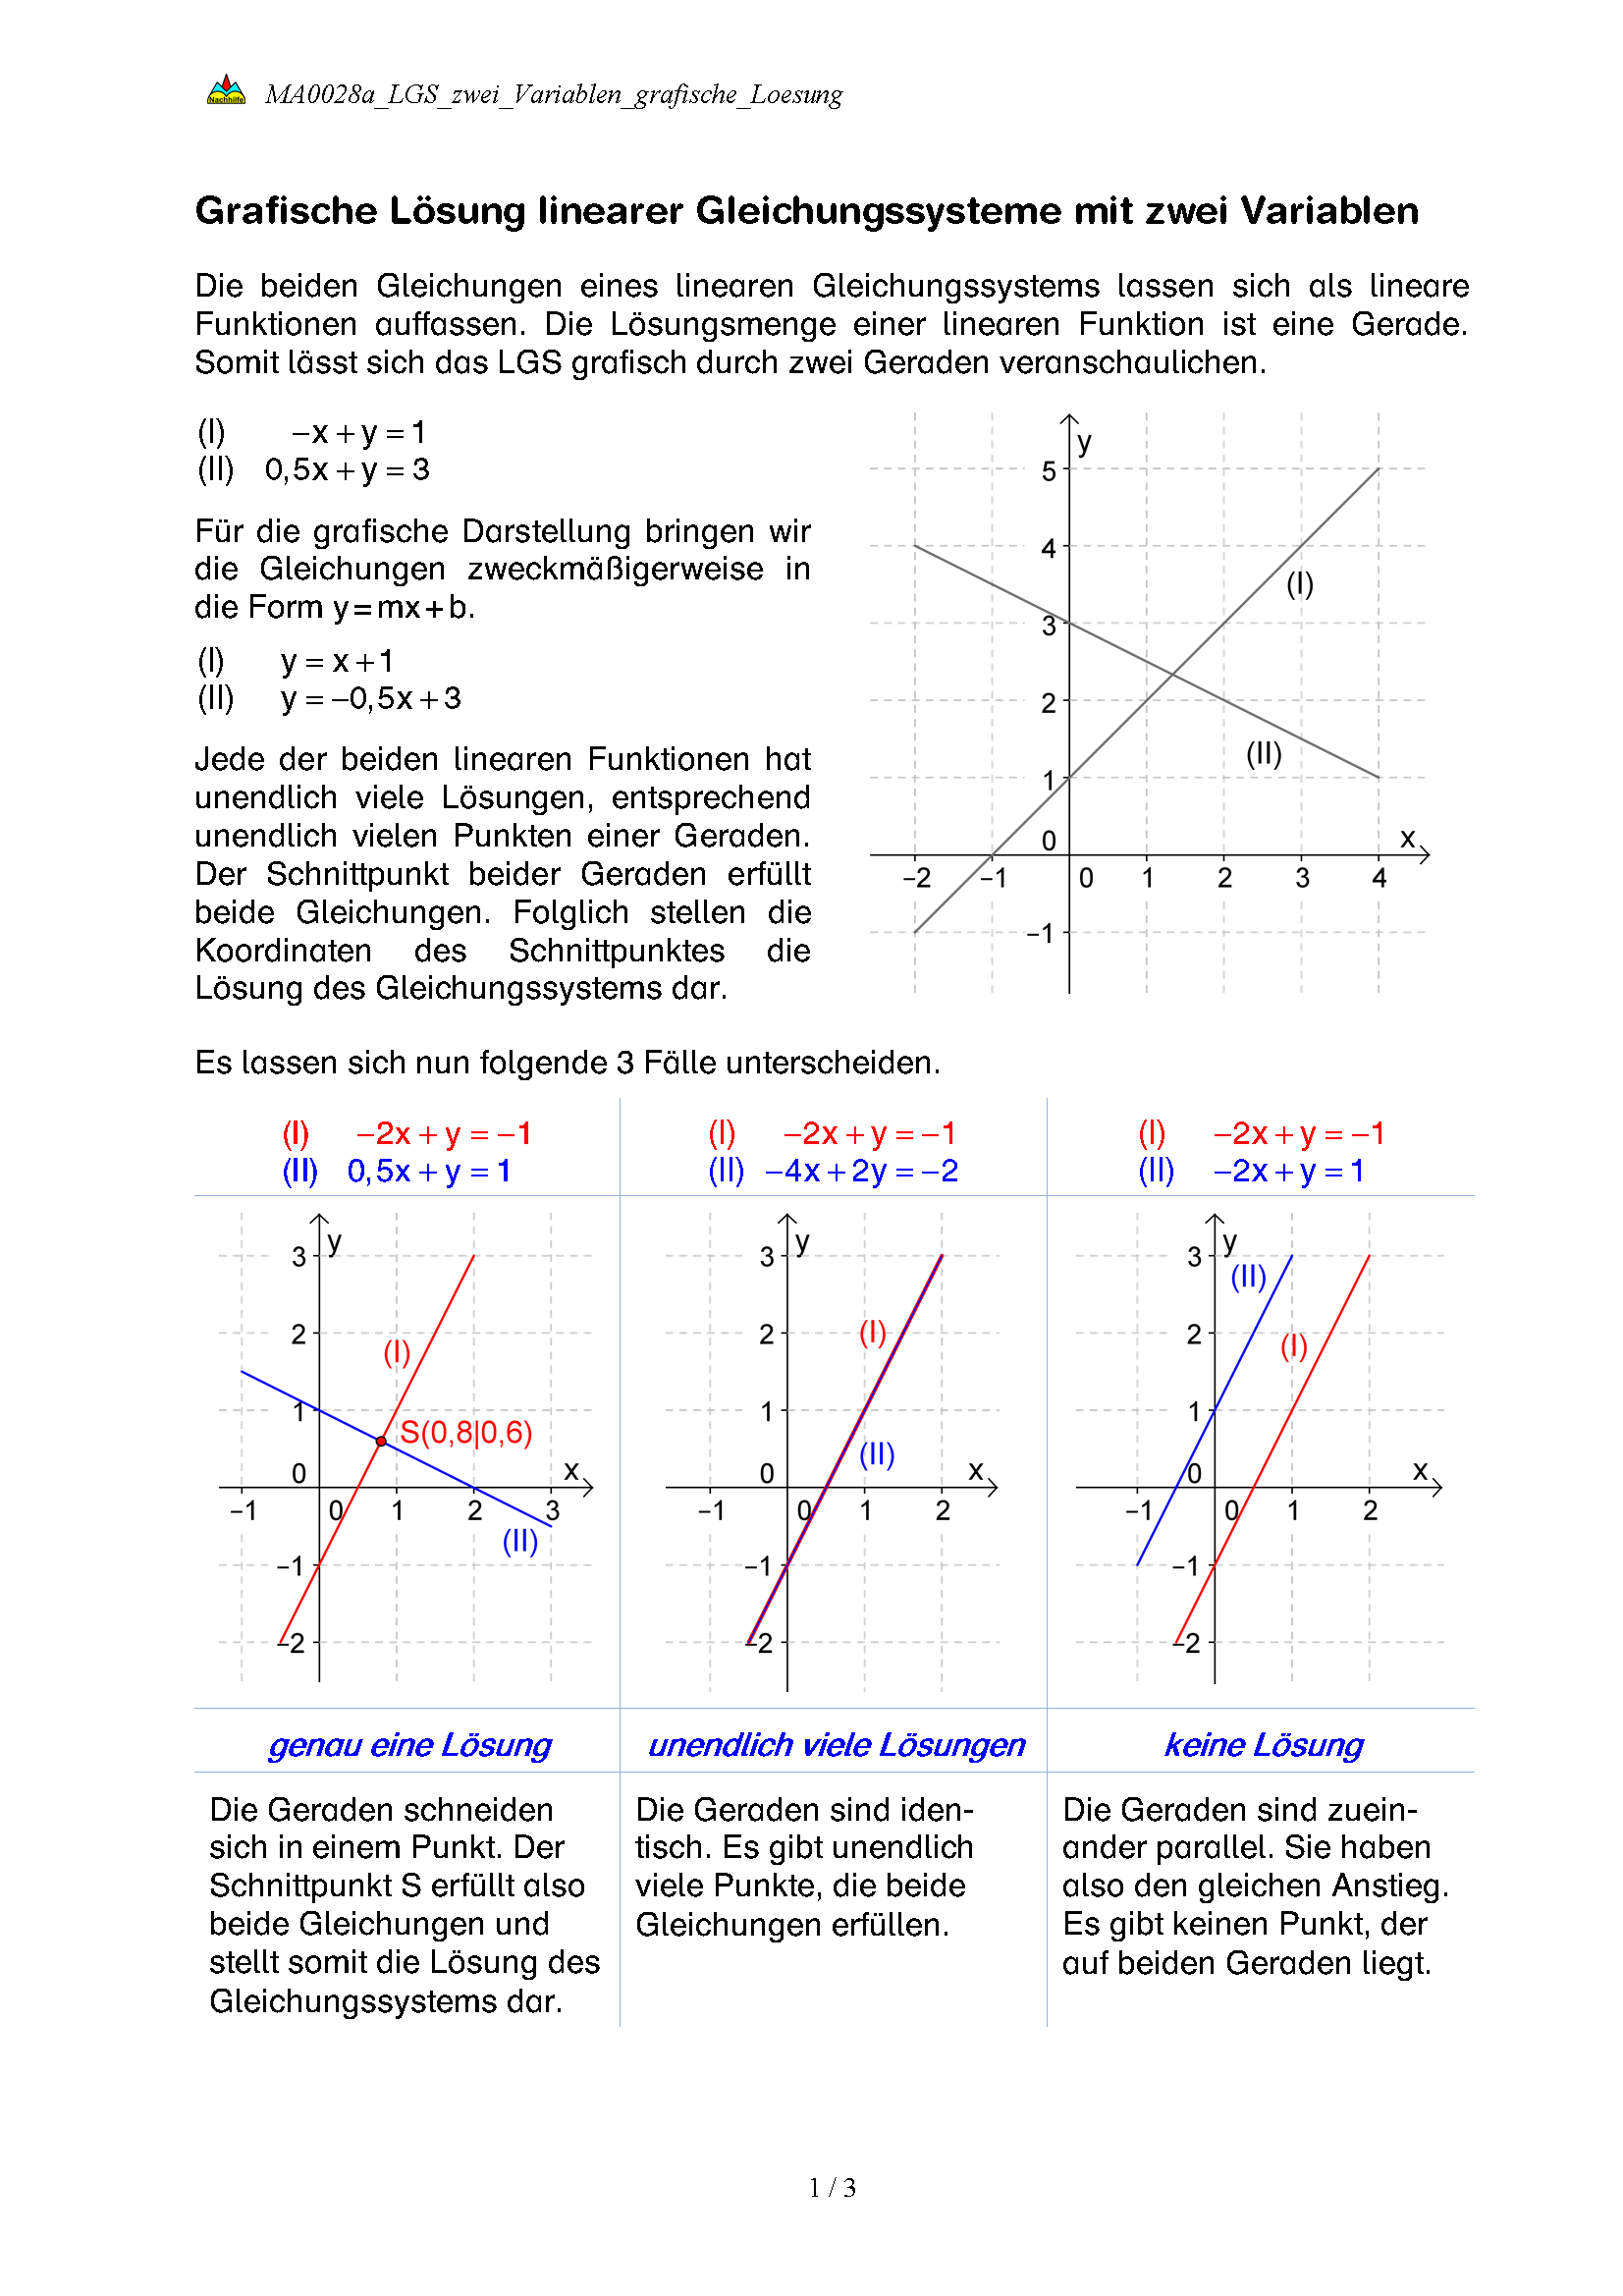 Grafische Lösung linearer Gleichungssysteme mit zwei Variablen